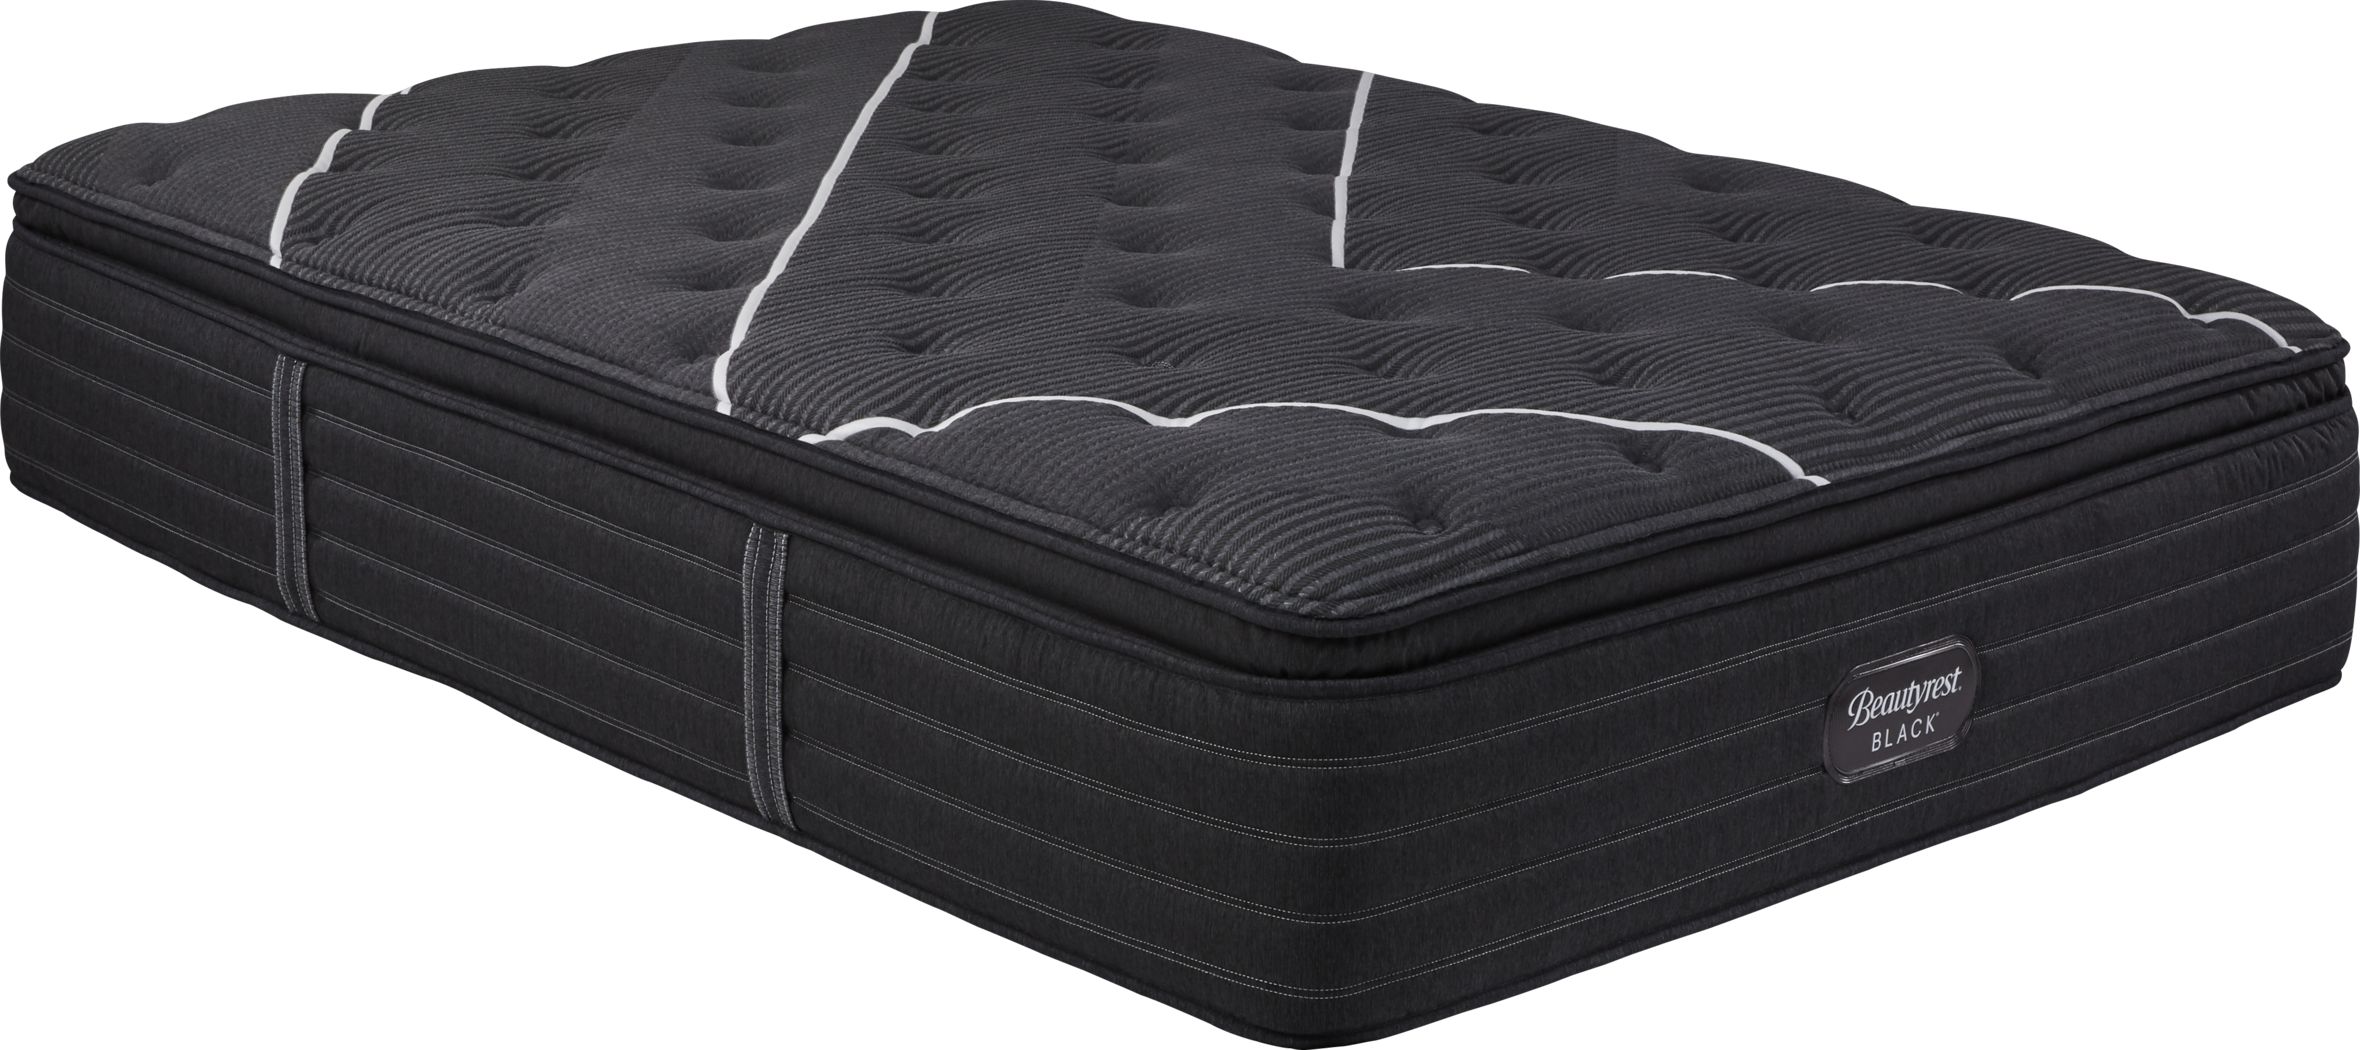 beautyrest black reyna plush mattress queen